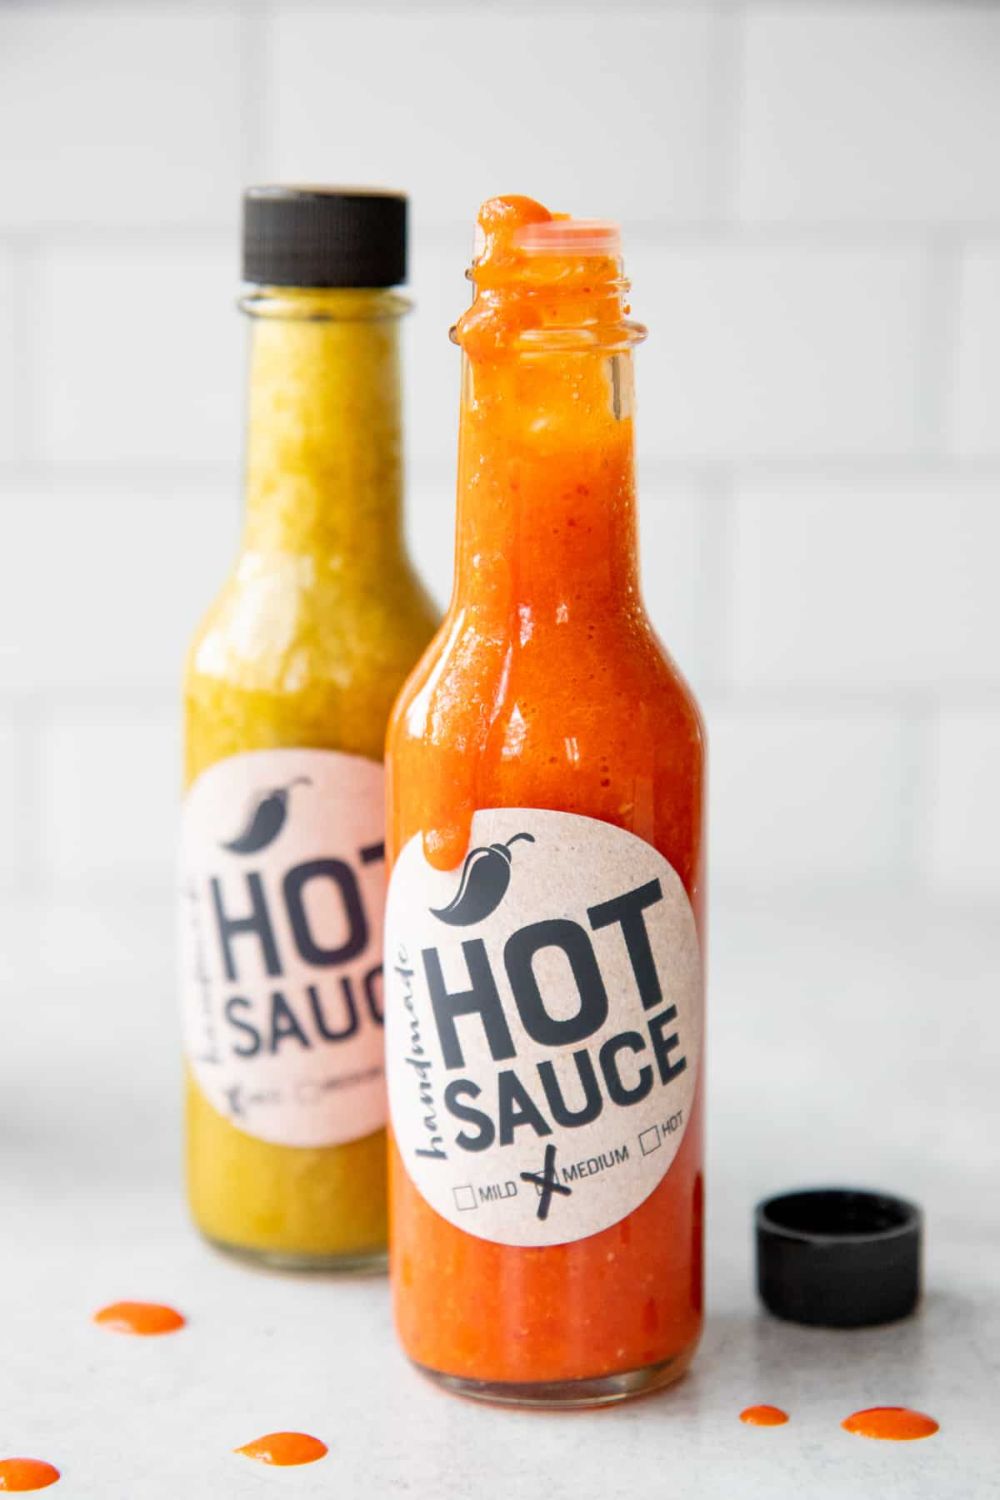 Homemade hot sauce